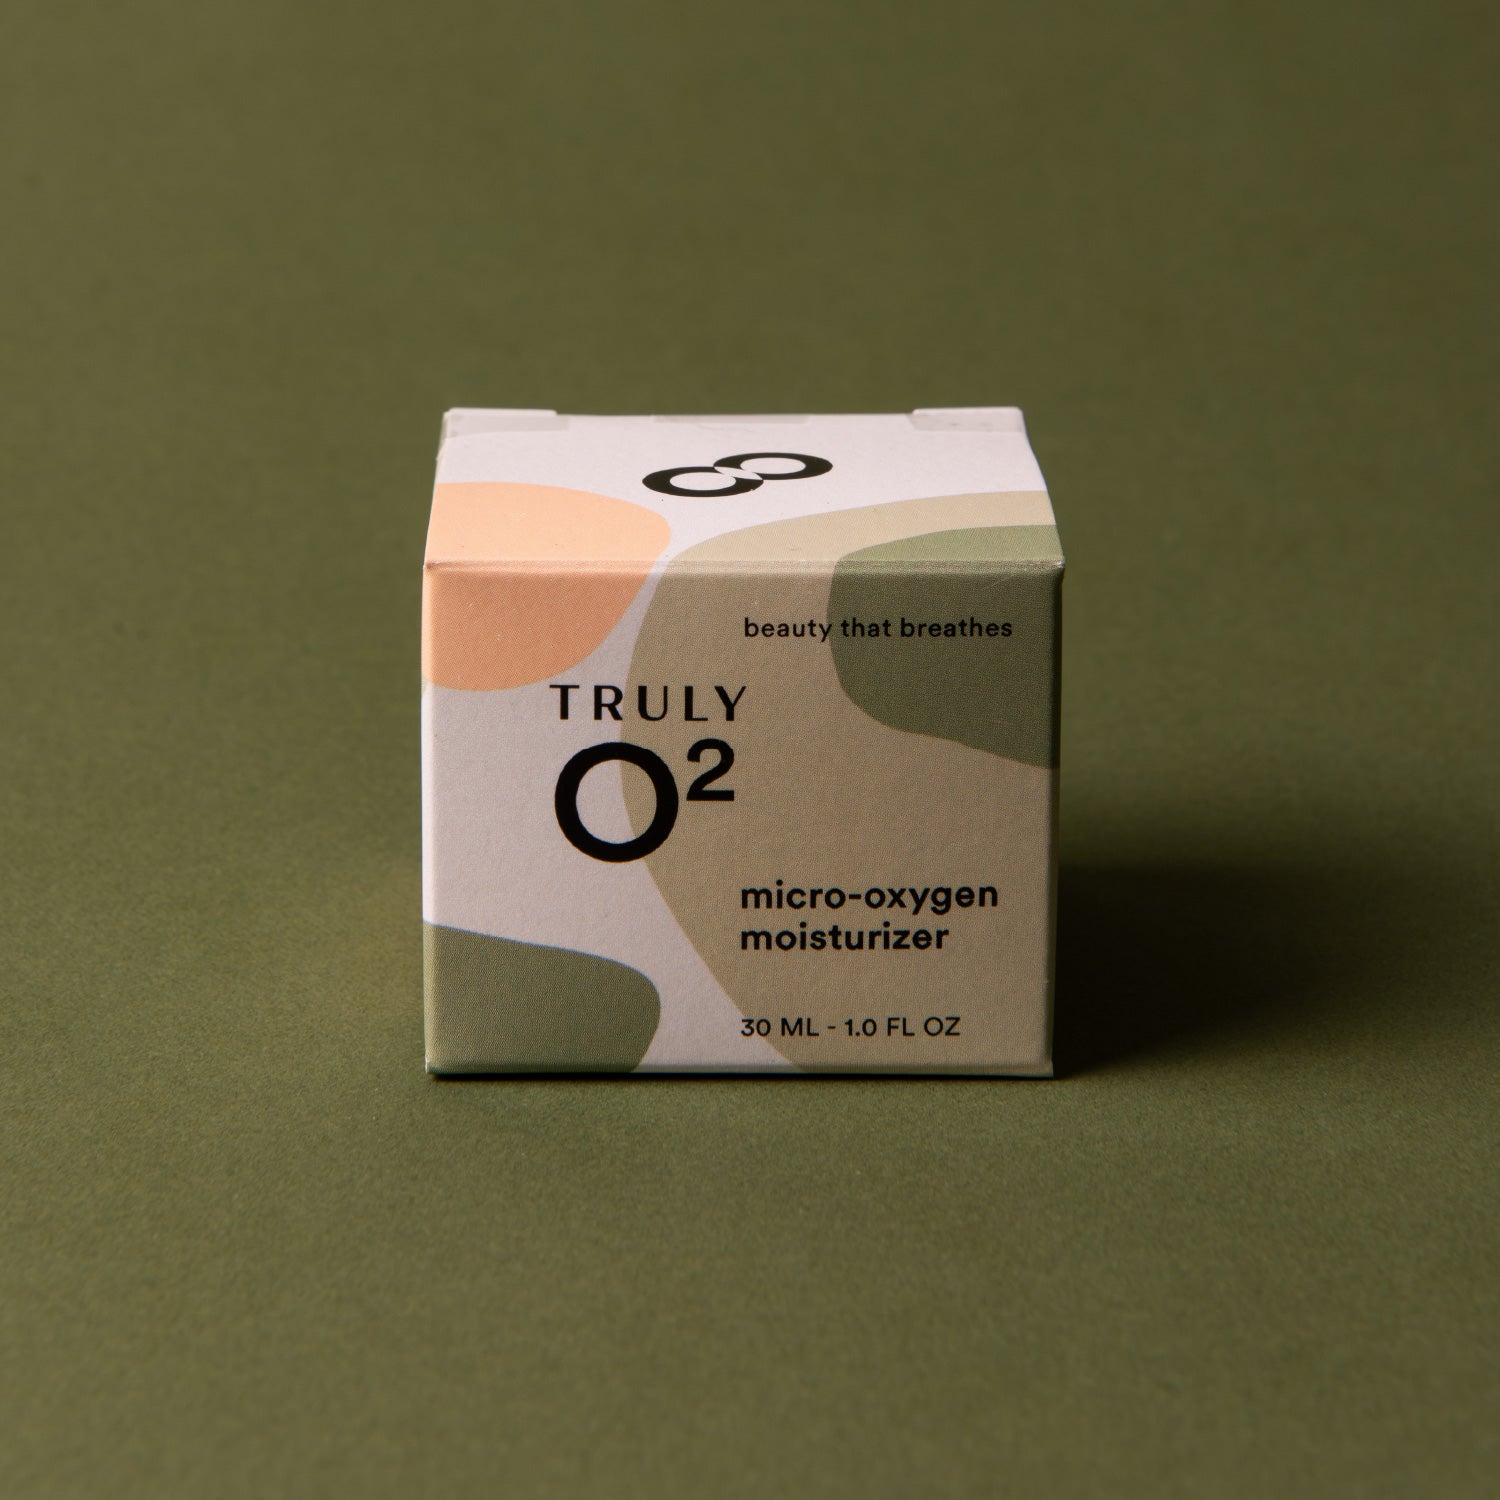 Truly O2 micro-oxygen moisturizer face cream box